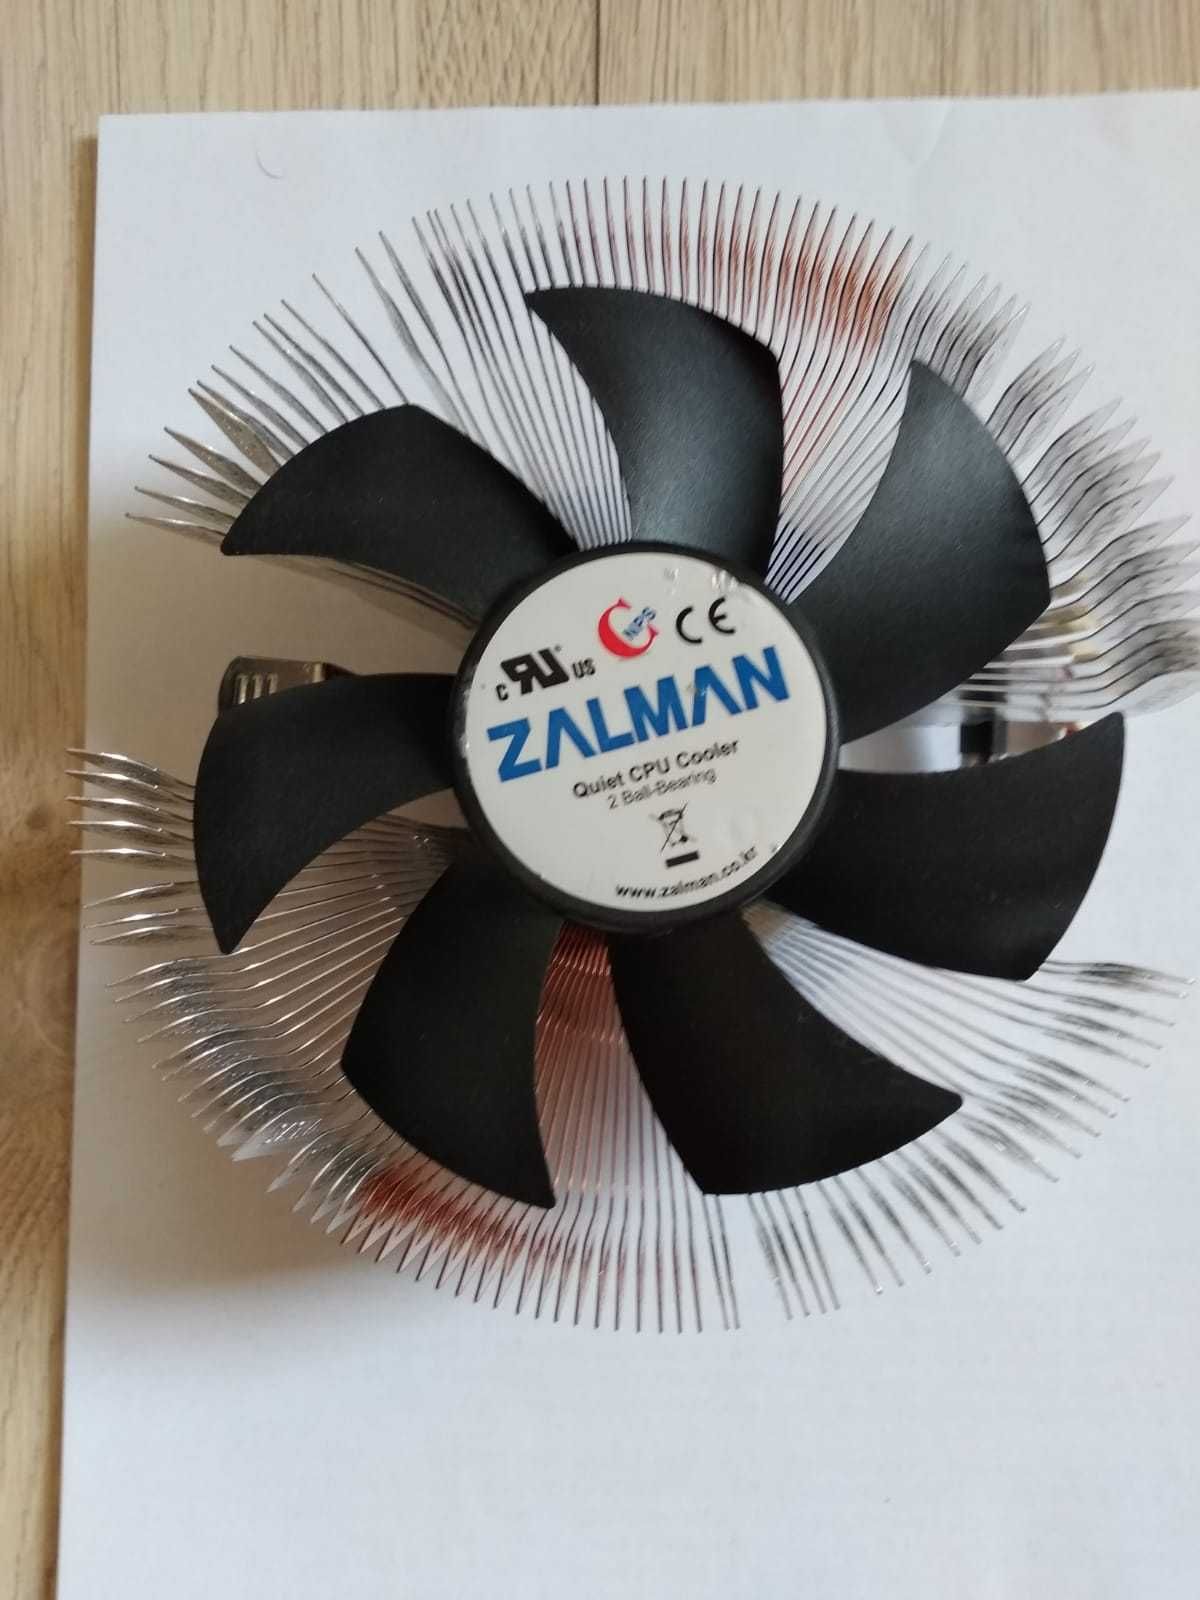 Cooler Rysen AM4 AM3 AM3+ FM1 FM2 FM3 Zalman 120 mm